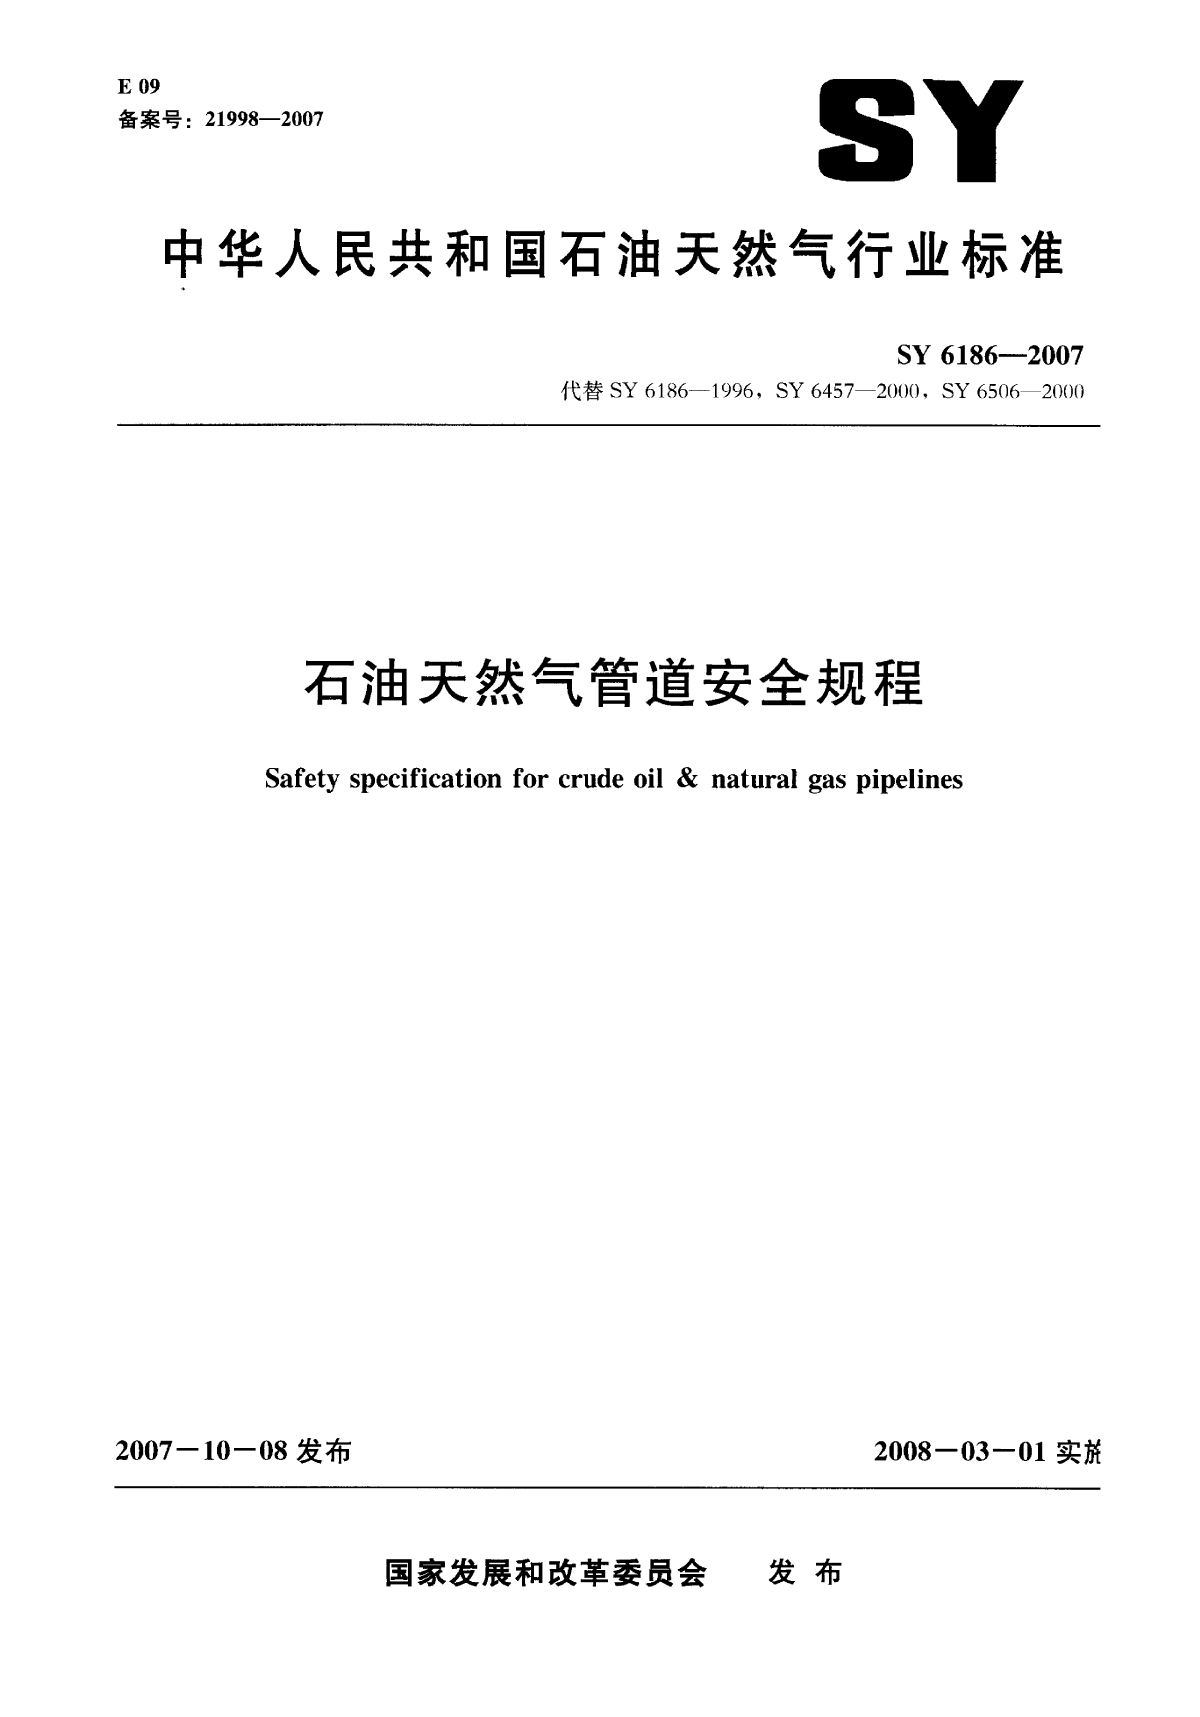 天然气安全规程SY6186-2007.pdf